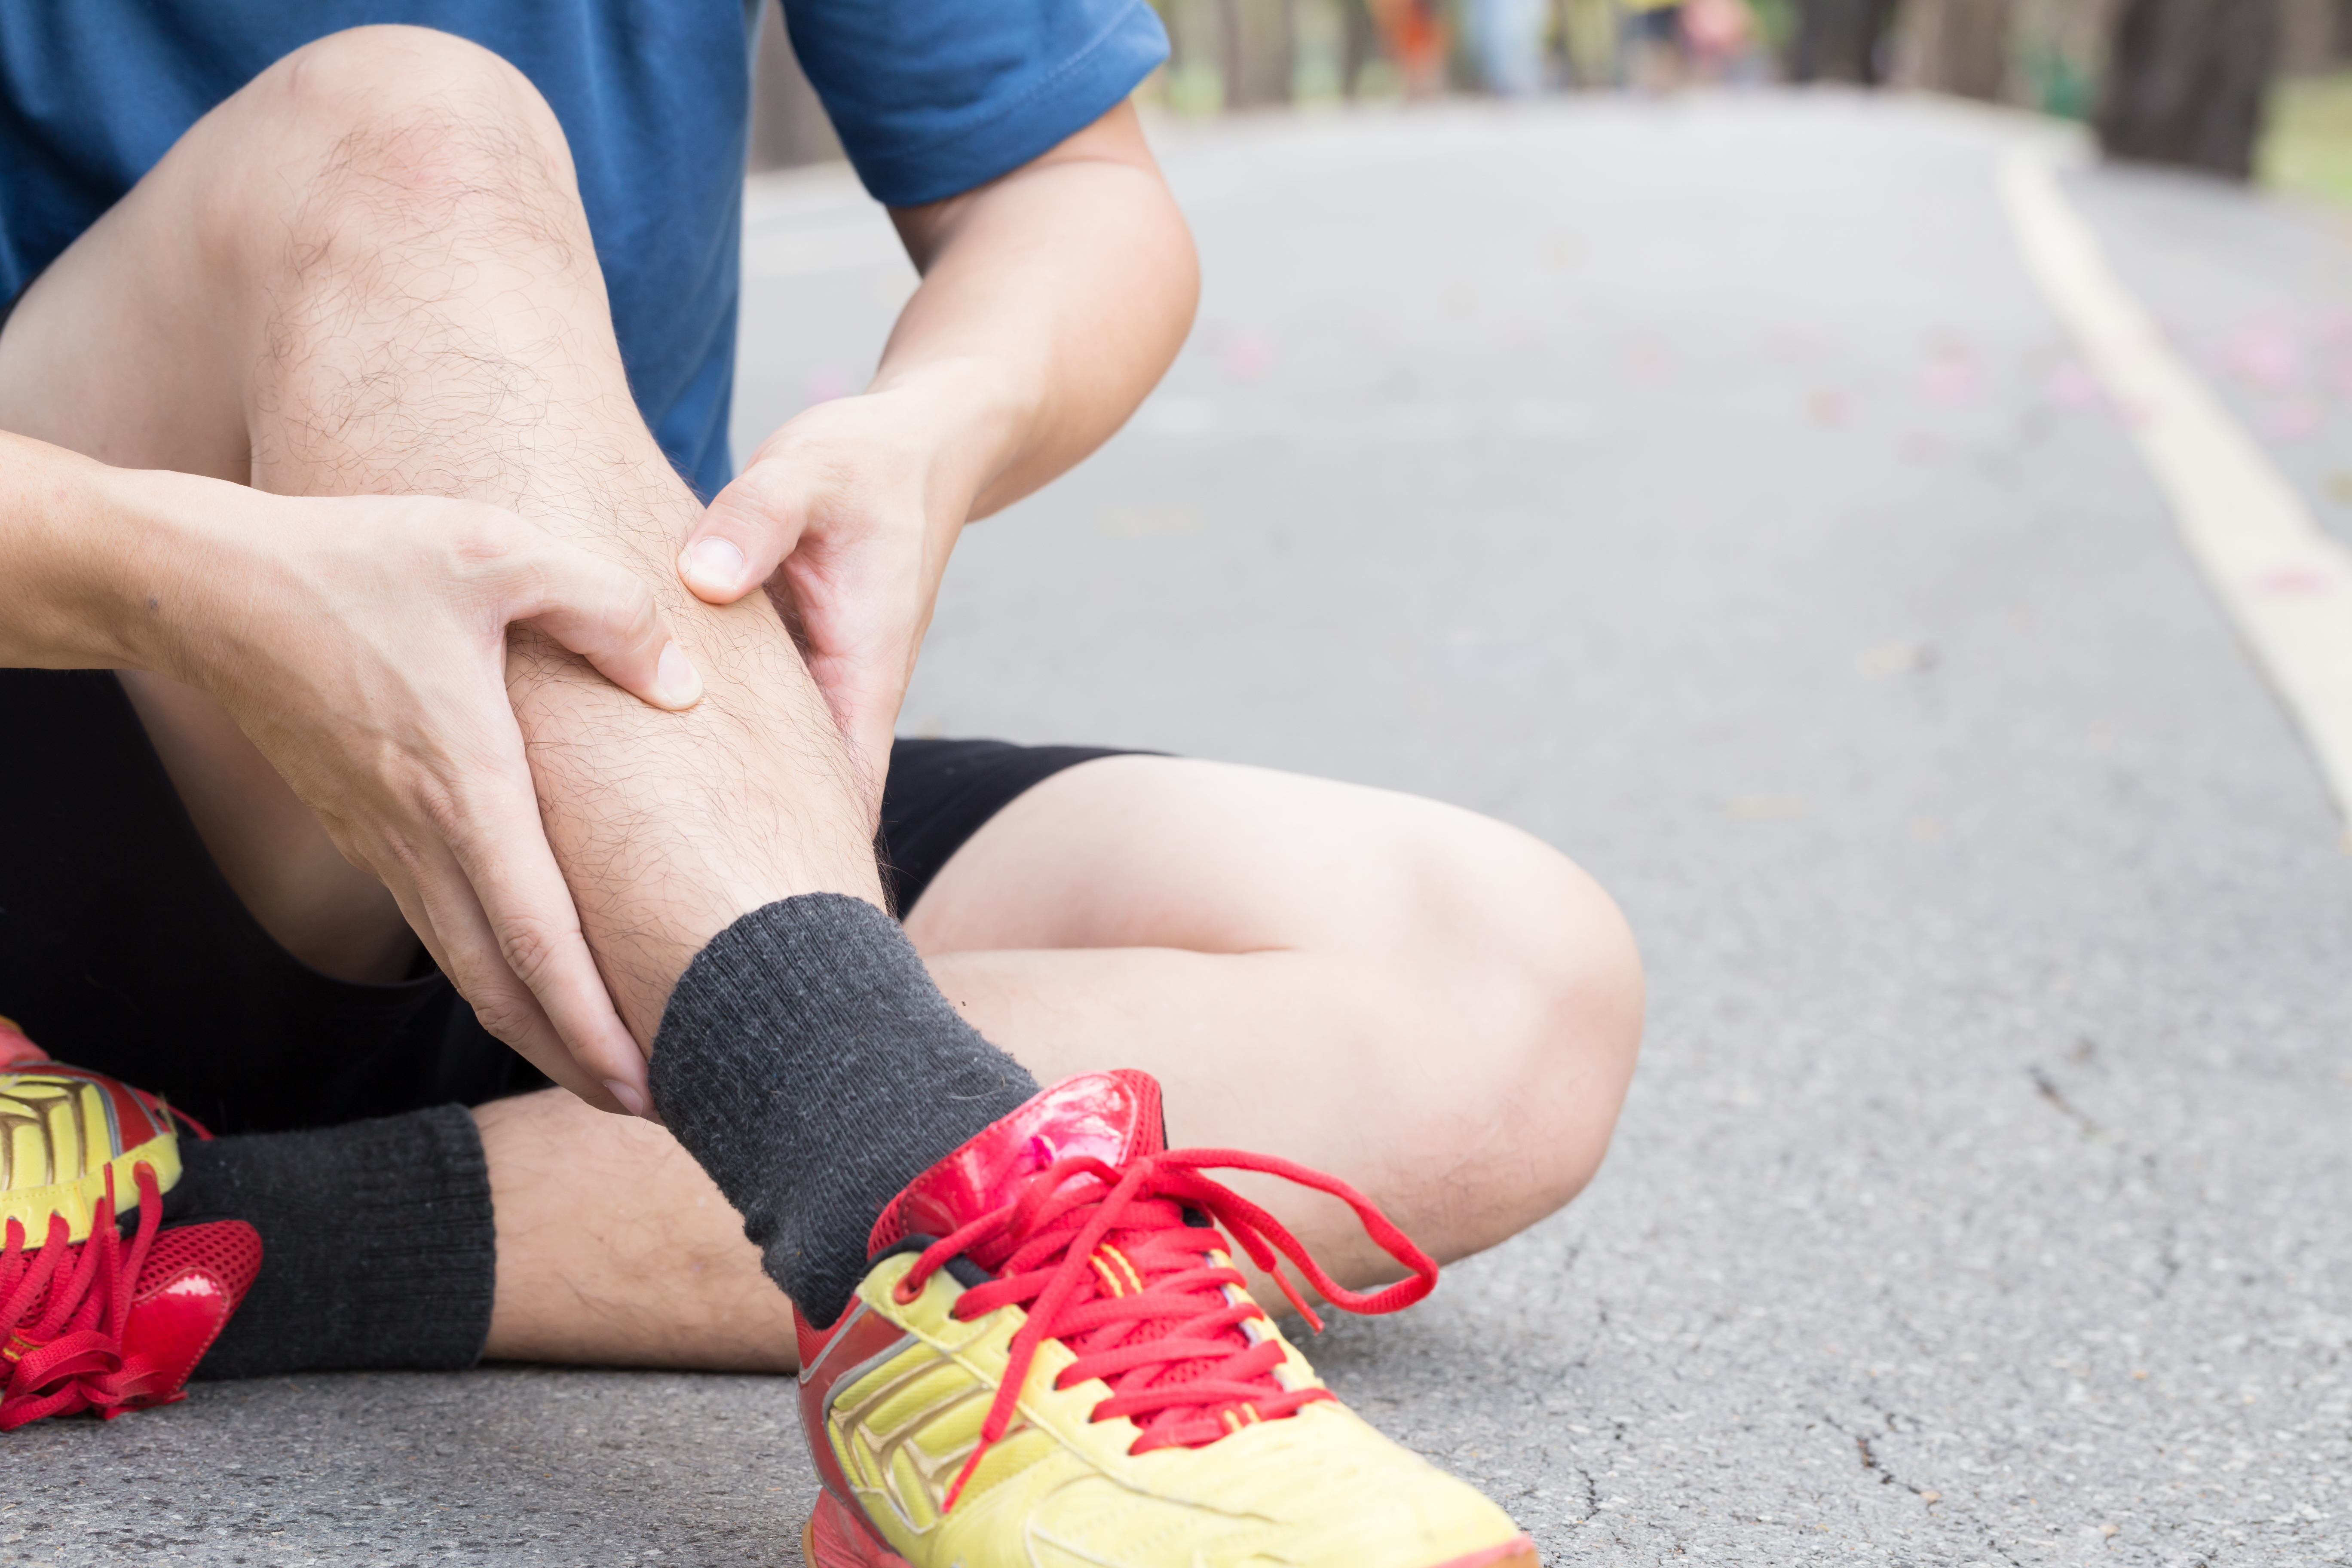 O principal sintoma é uma dor intensa na parte interna da tíbia que pode se estender até o tornozelo. Ela pode ser mais forte durante ou depois da corrida